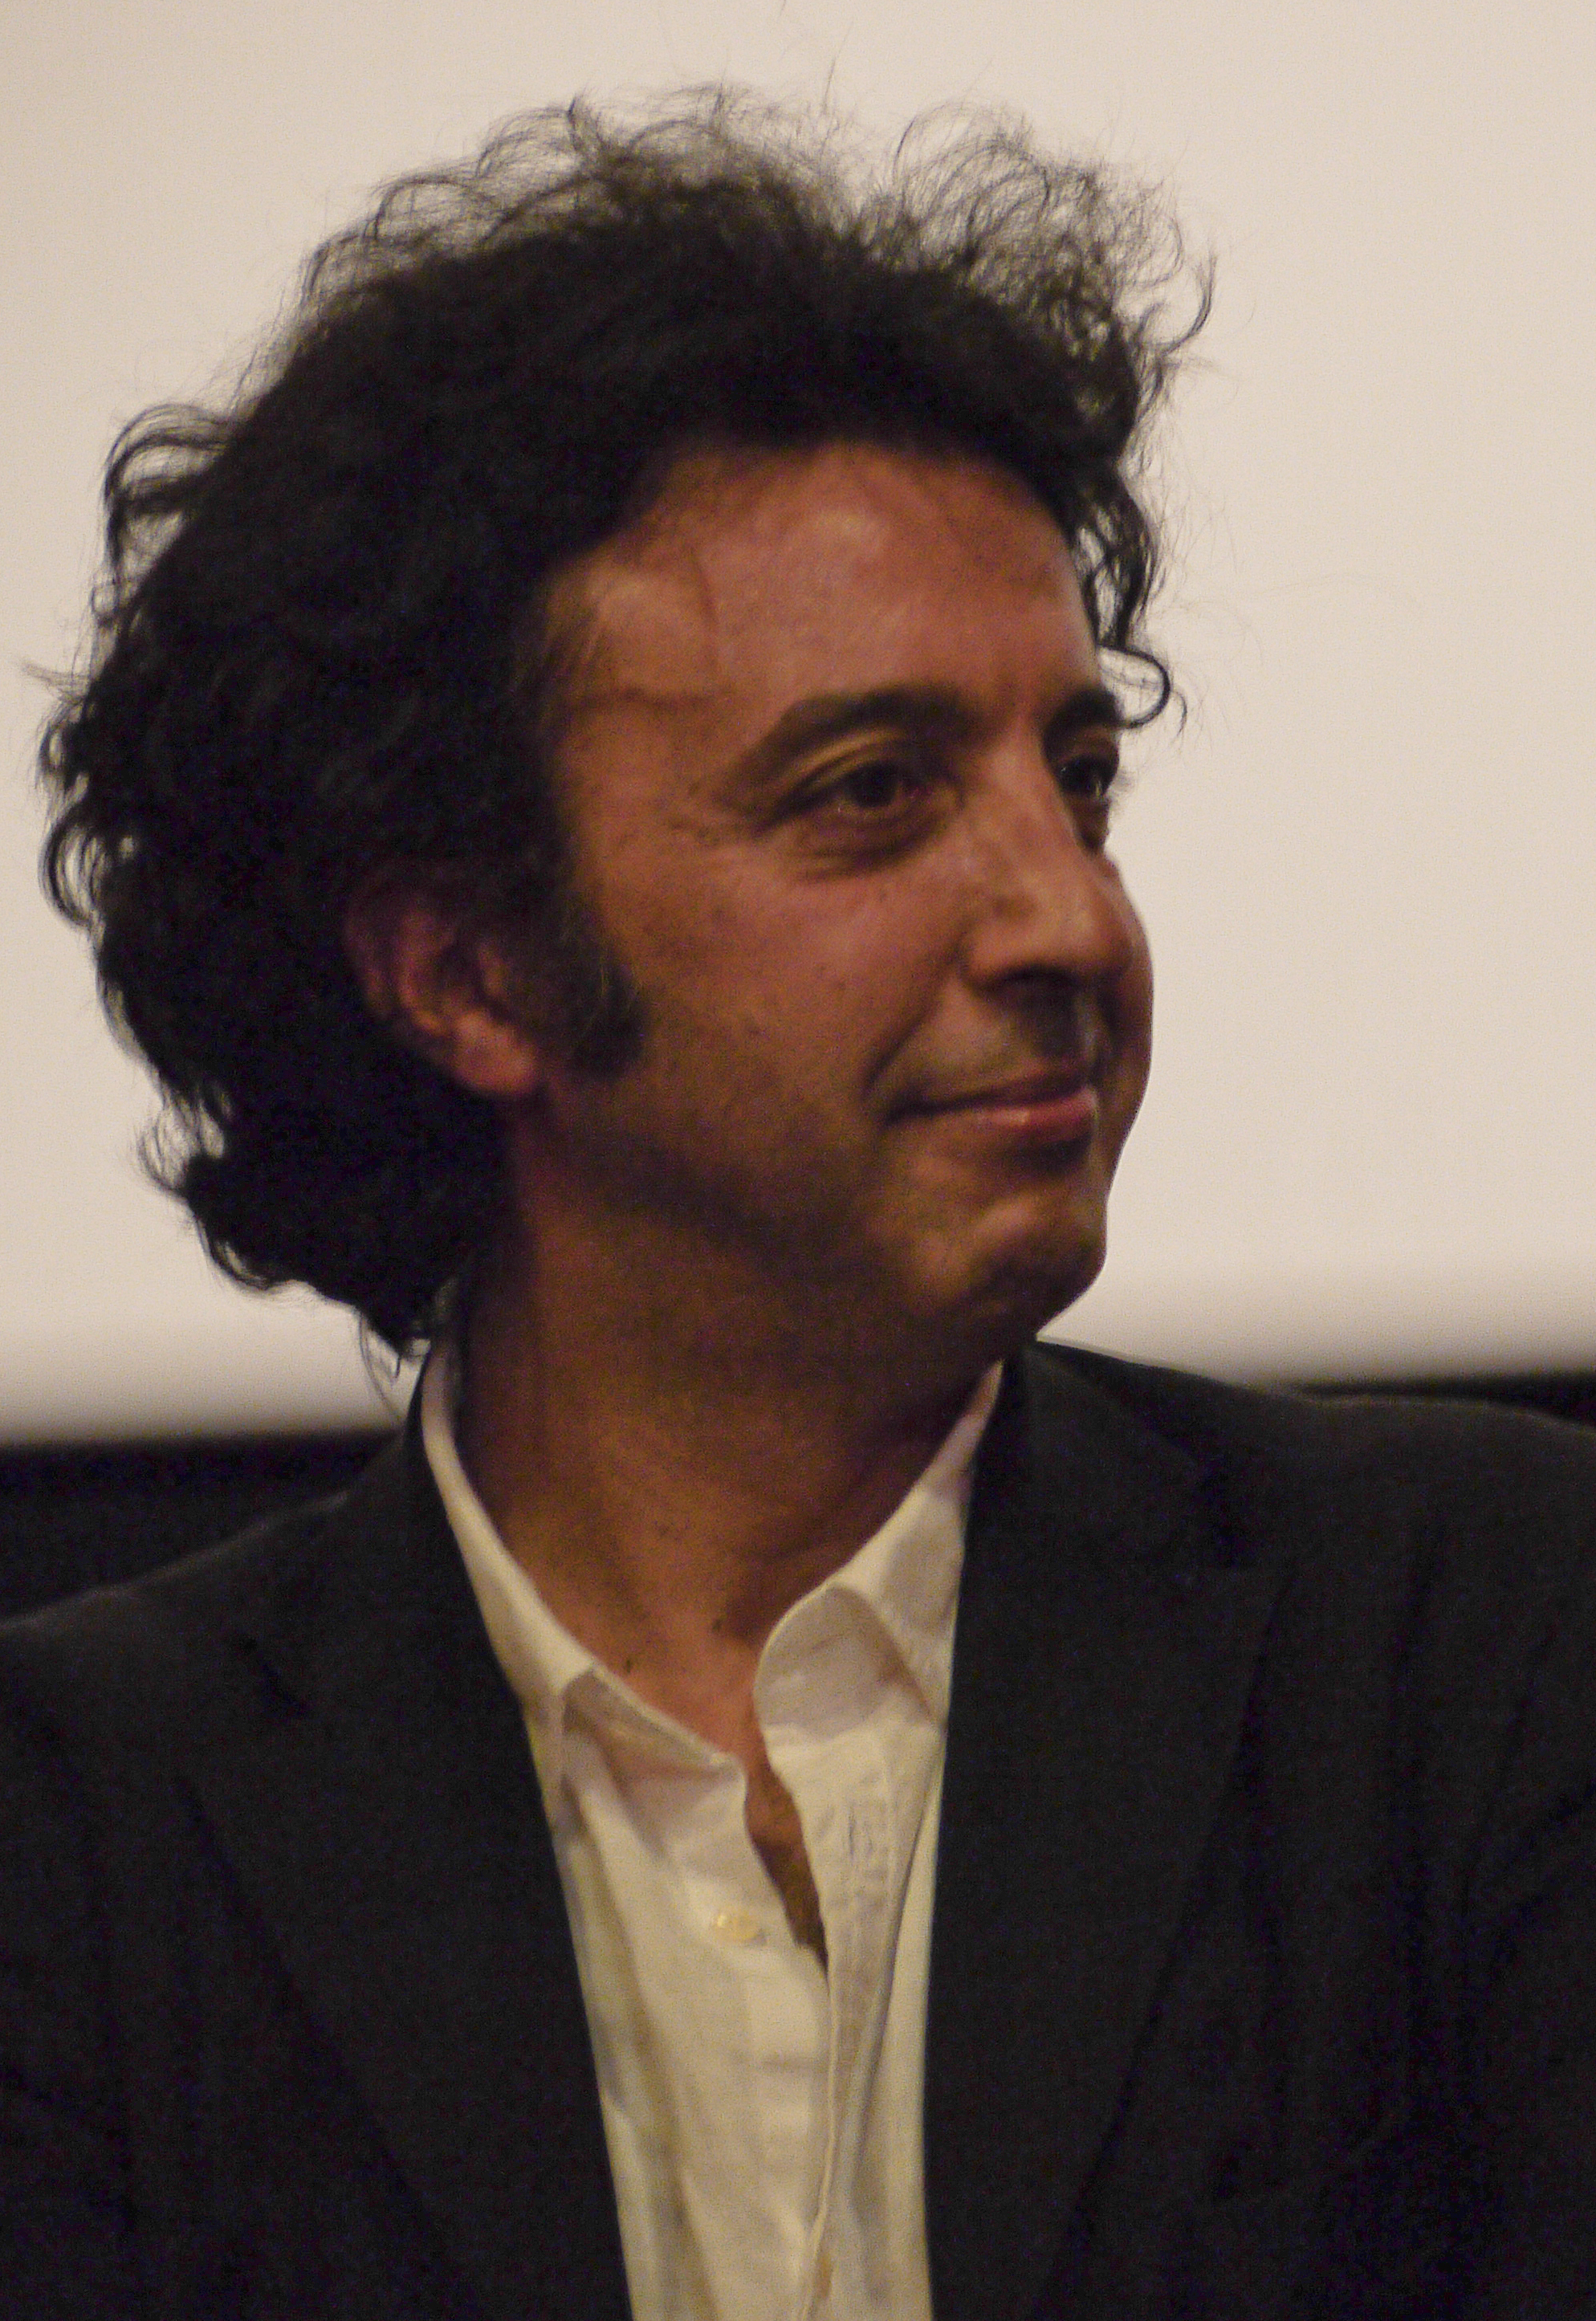 Ismaël Ferroukhi in 2011